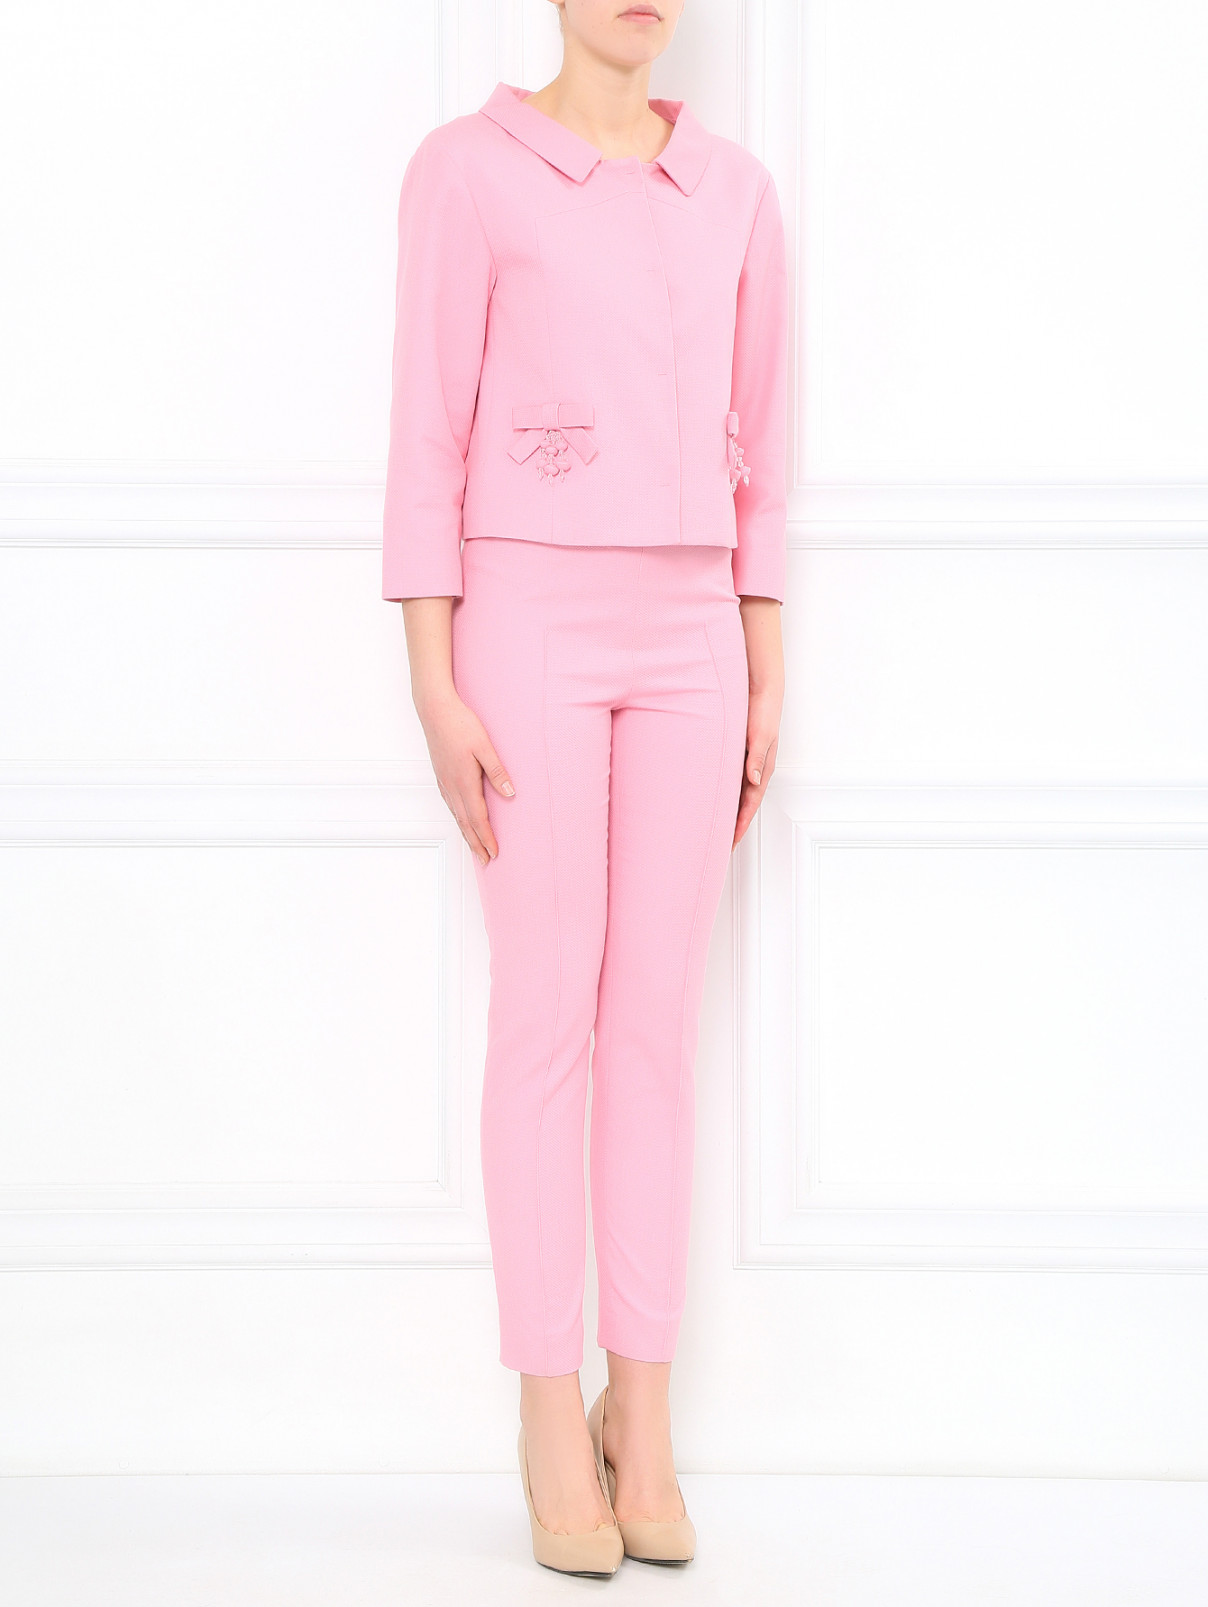 Зауженные брюки из хлопка Moschino Cheap&Chic  –  Модель Общий вид  – Цвет:  Розовый